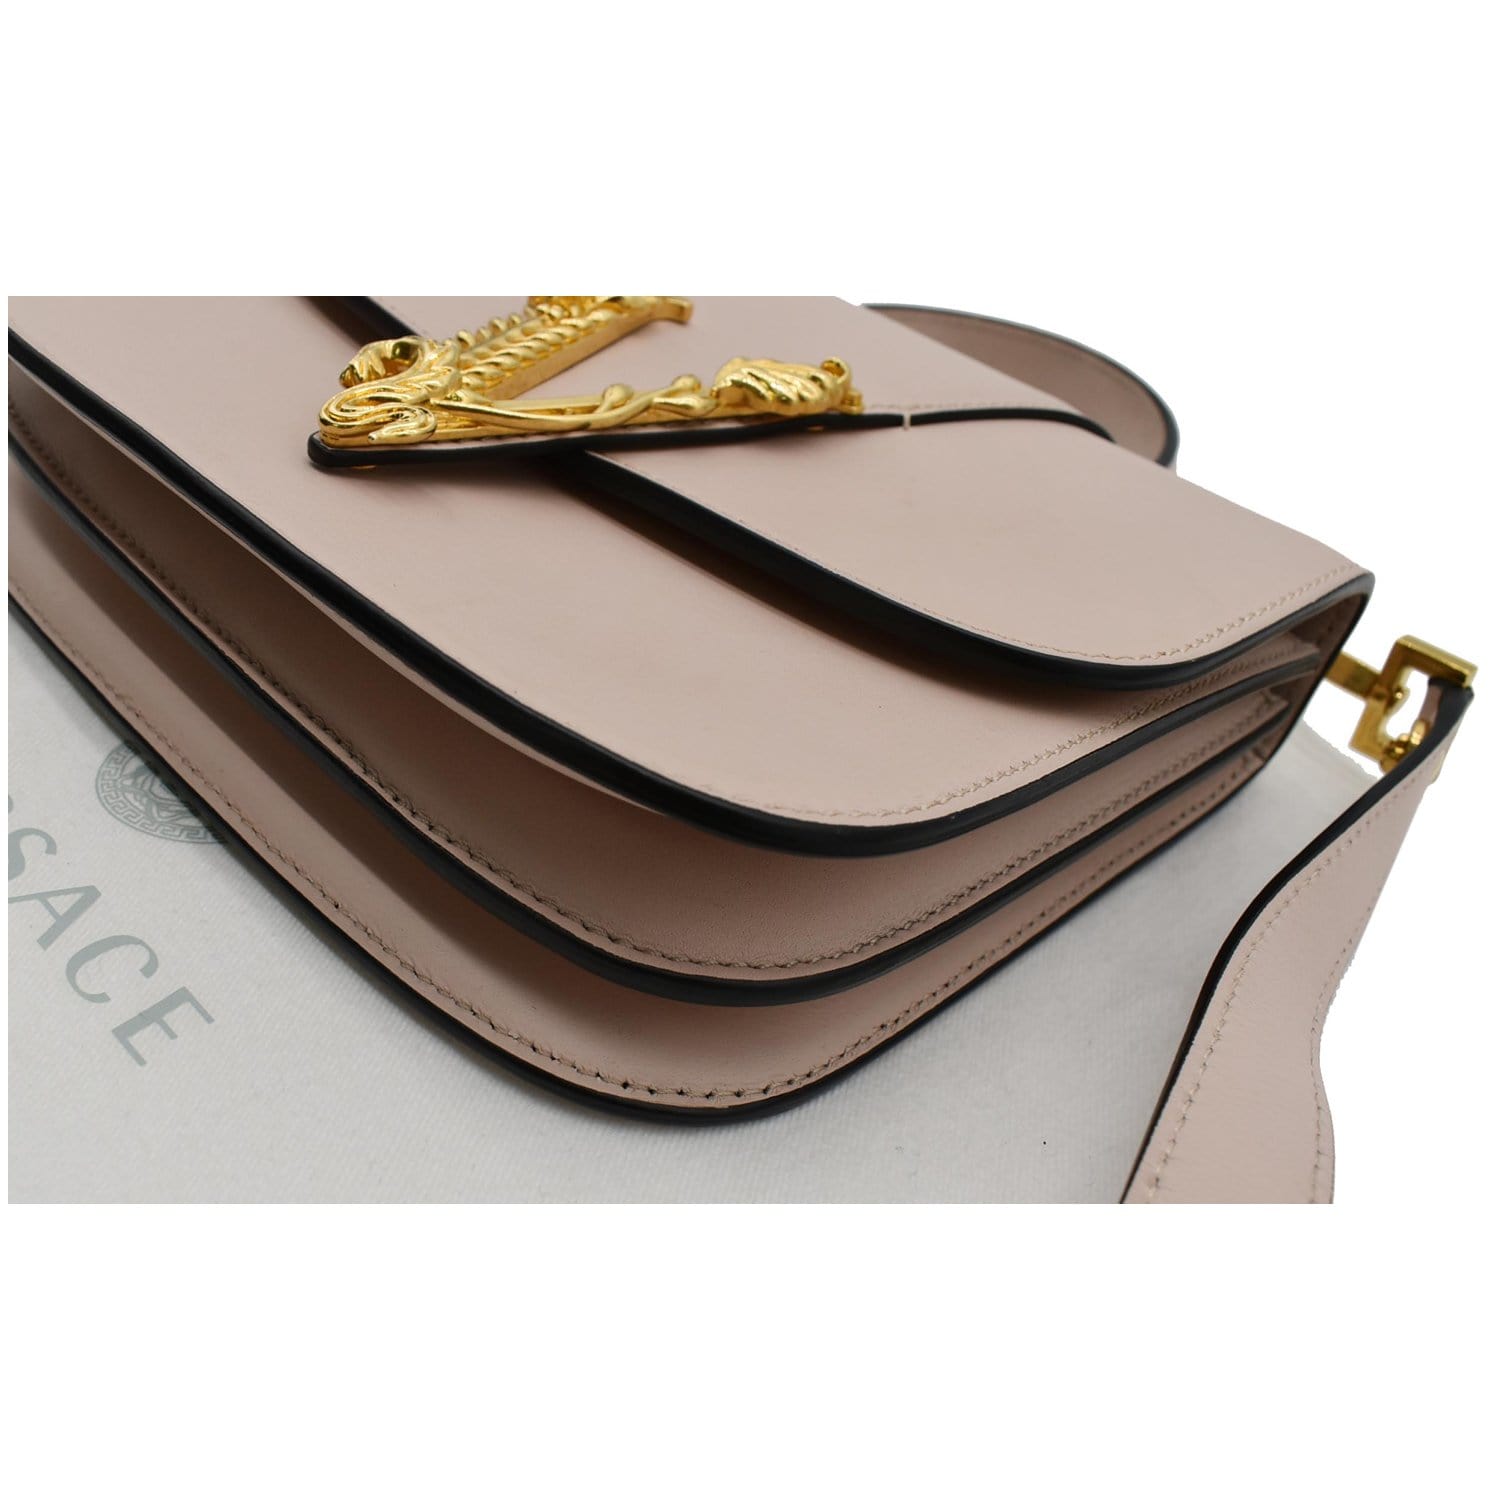 Versace Virtus Leather Shoulder Bag - ShopStyle